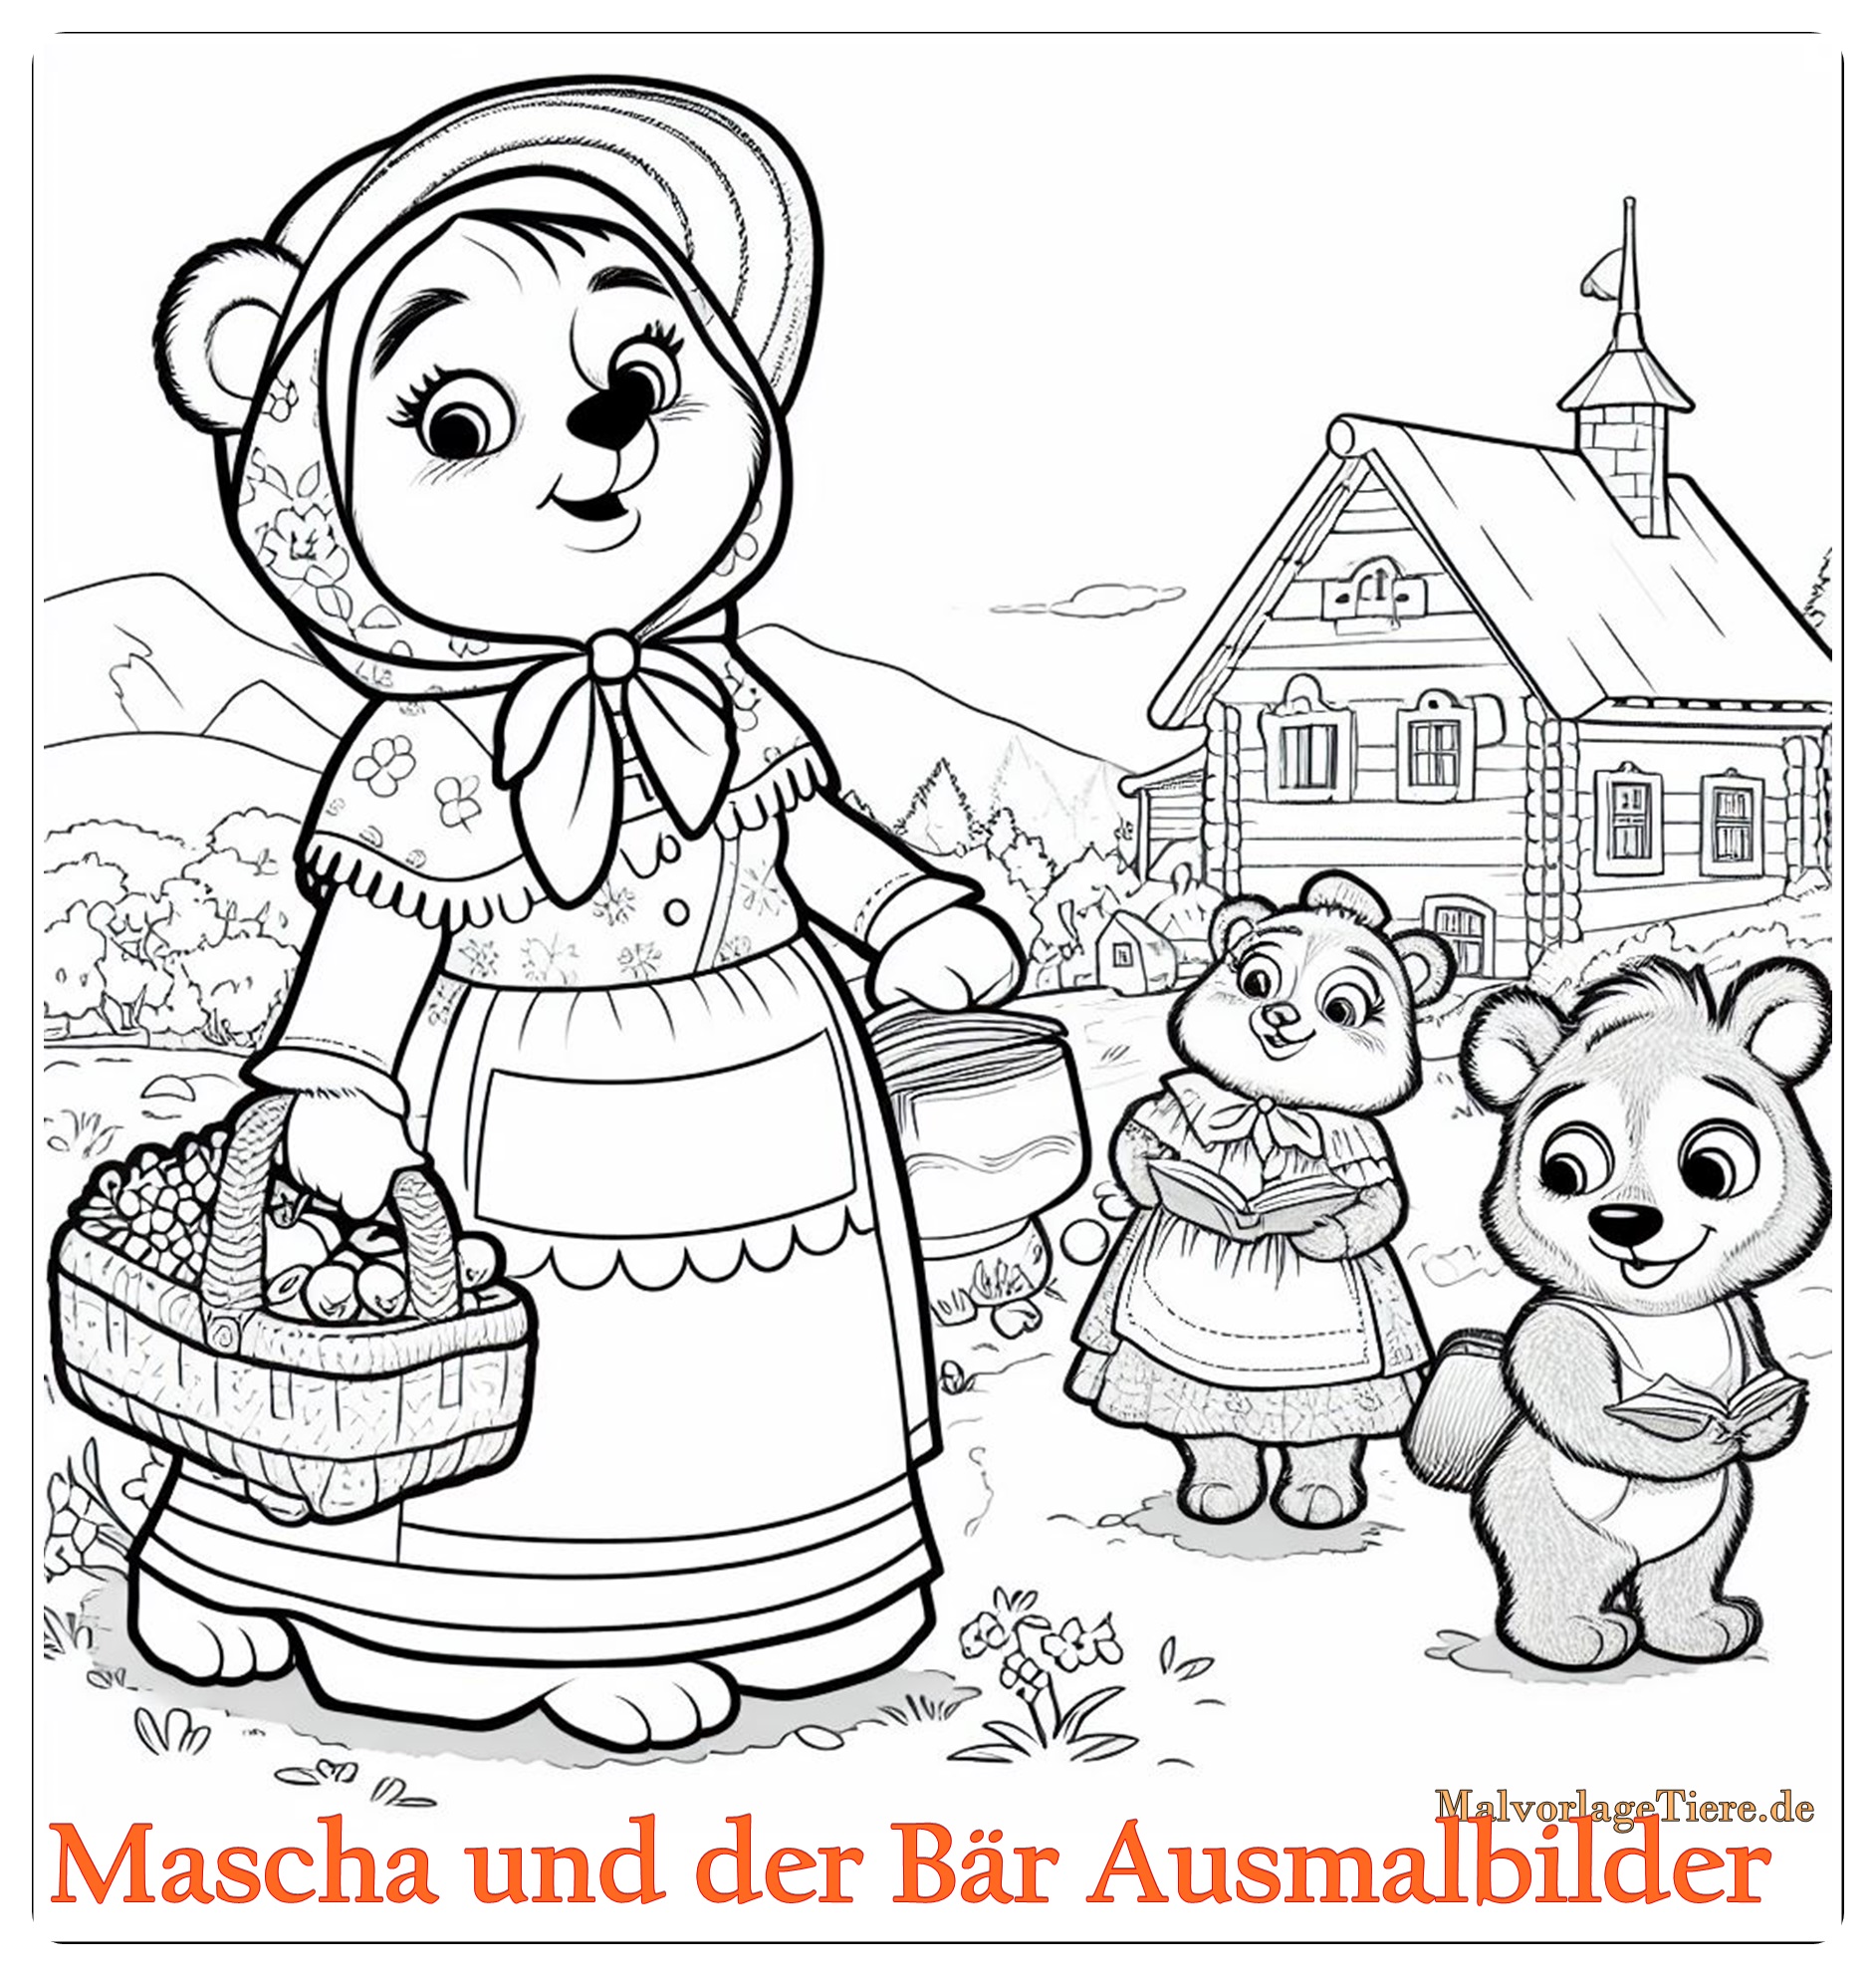 Mascha und der Bär Ausmalbilder 03 by malvorlagetiere.de